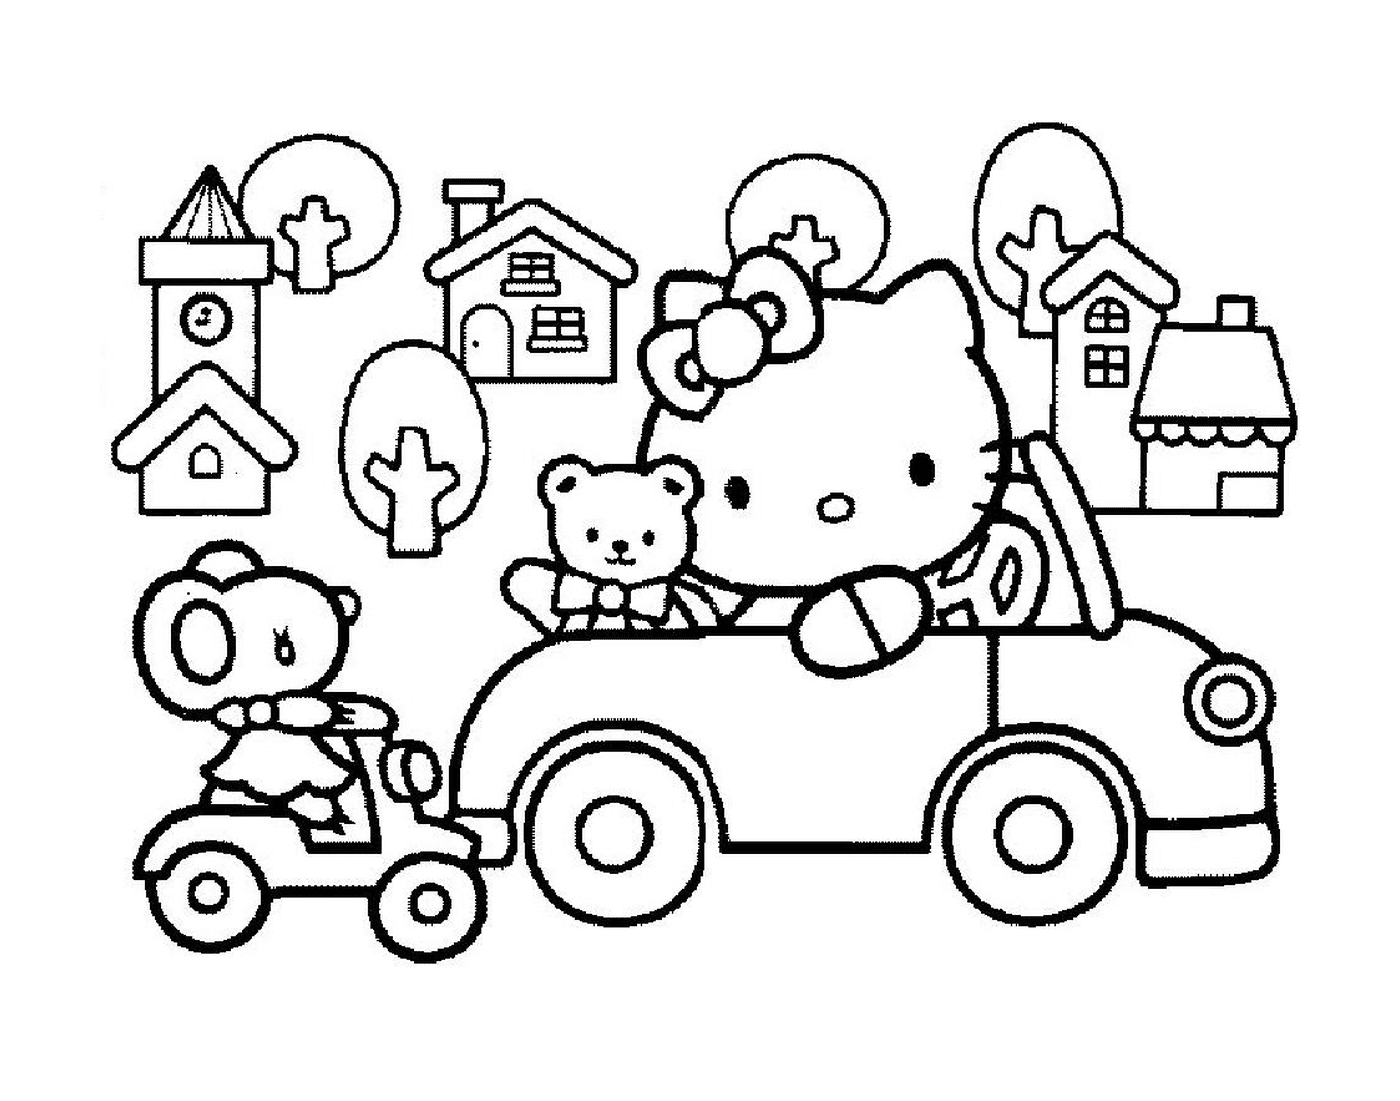  Hello Kitty driving a car with a teddy bear 